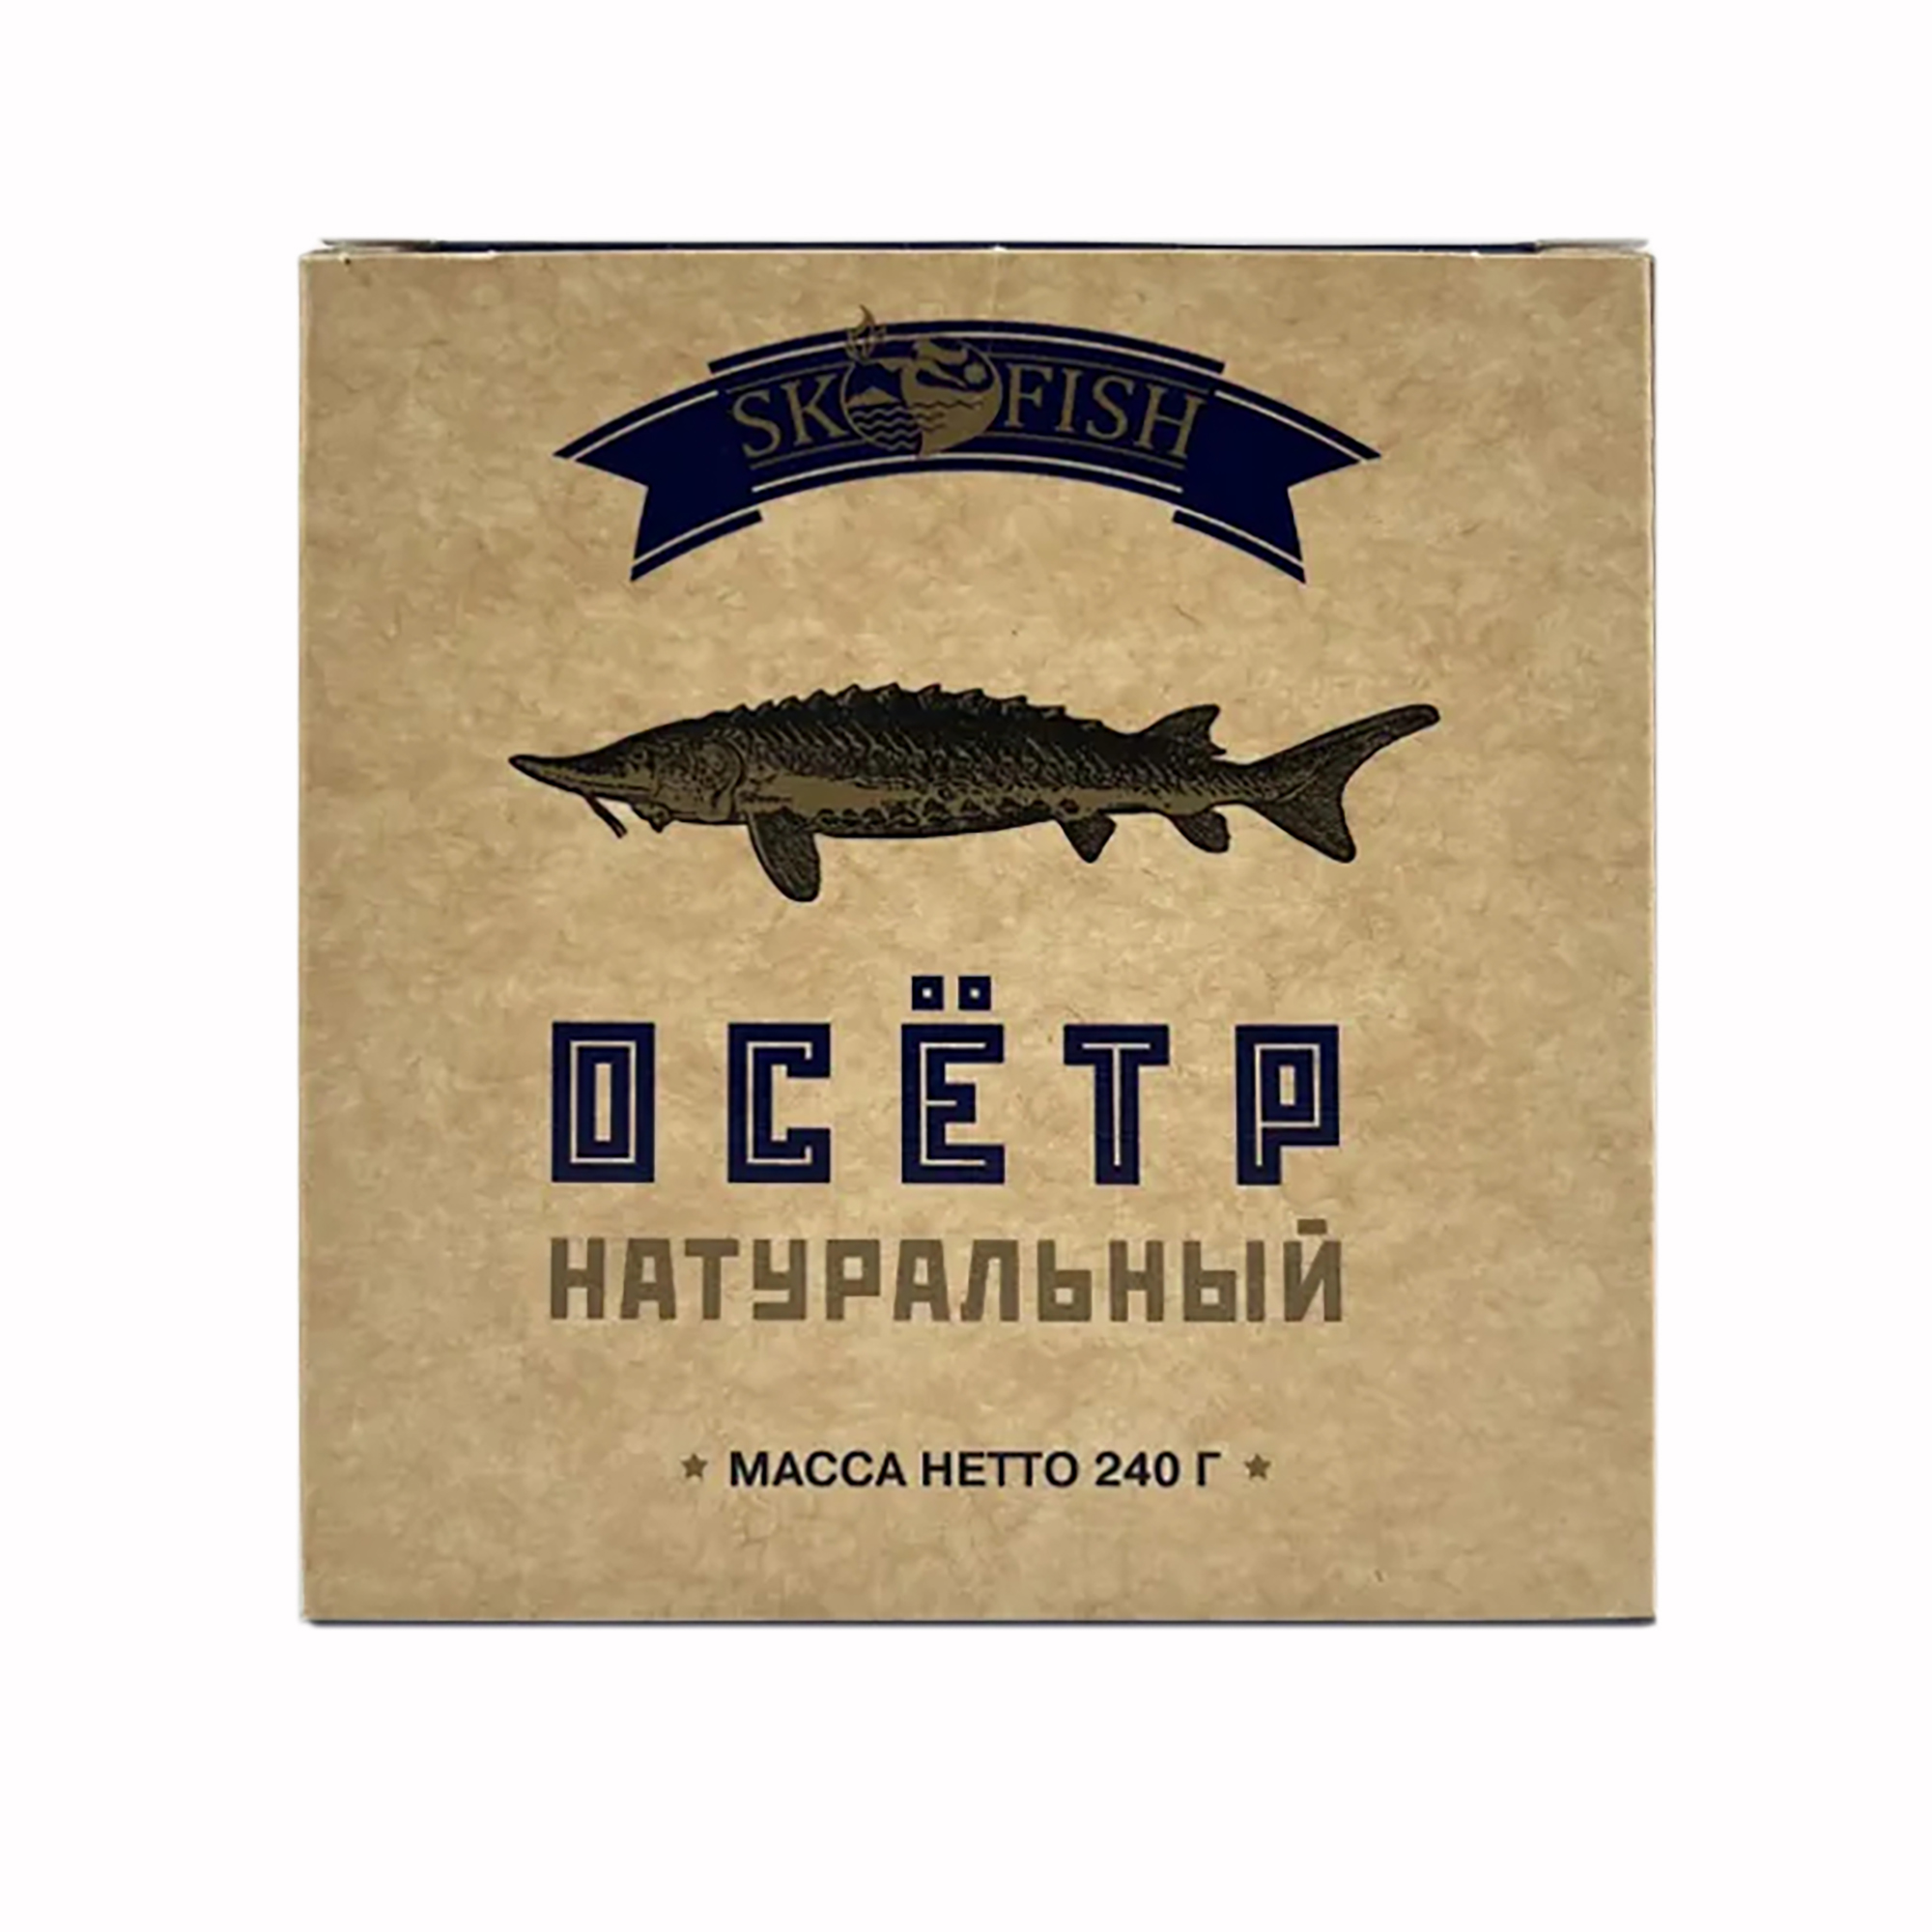 Осетр SK-FISH натуральный 240 г